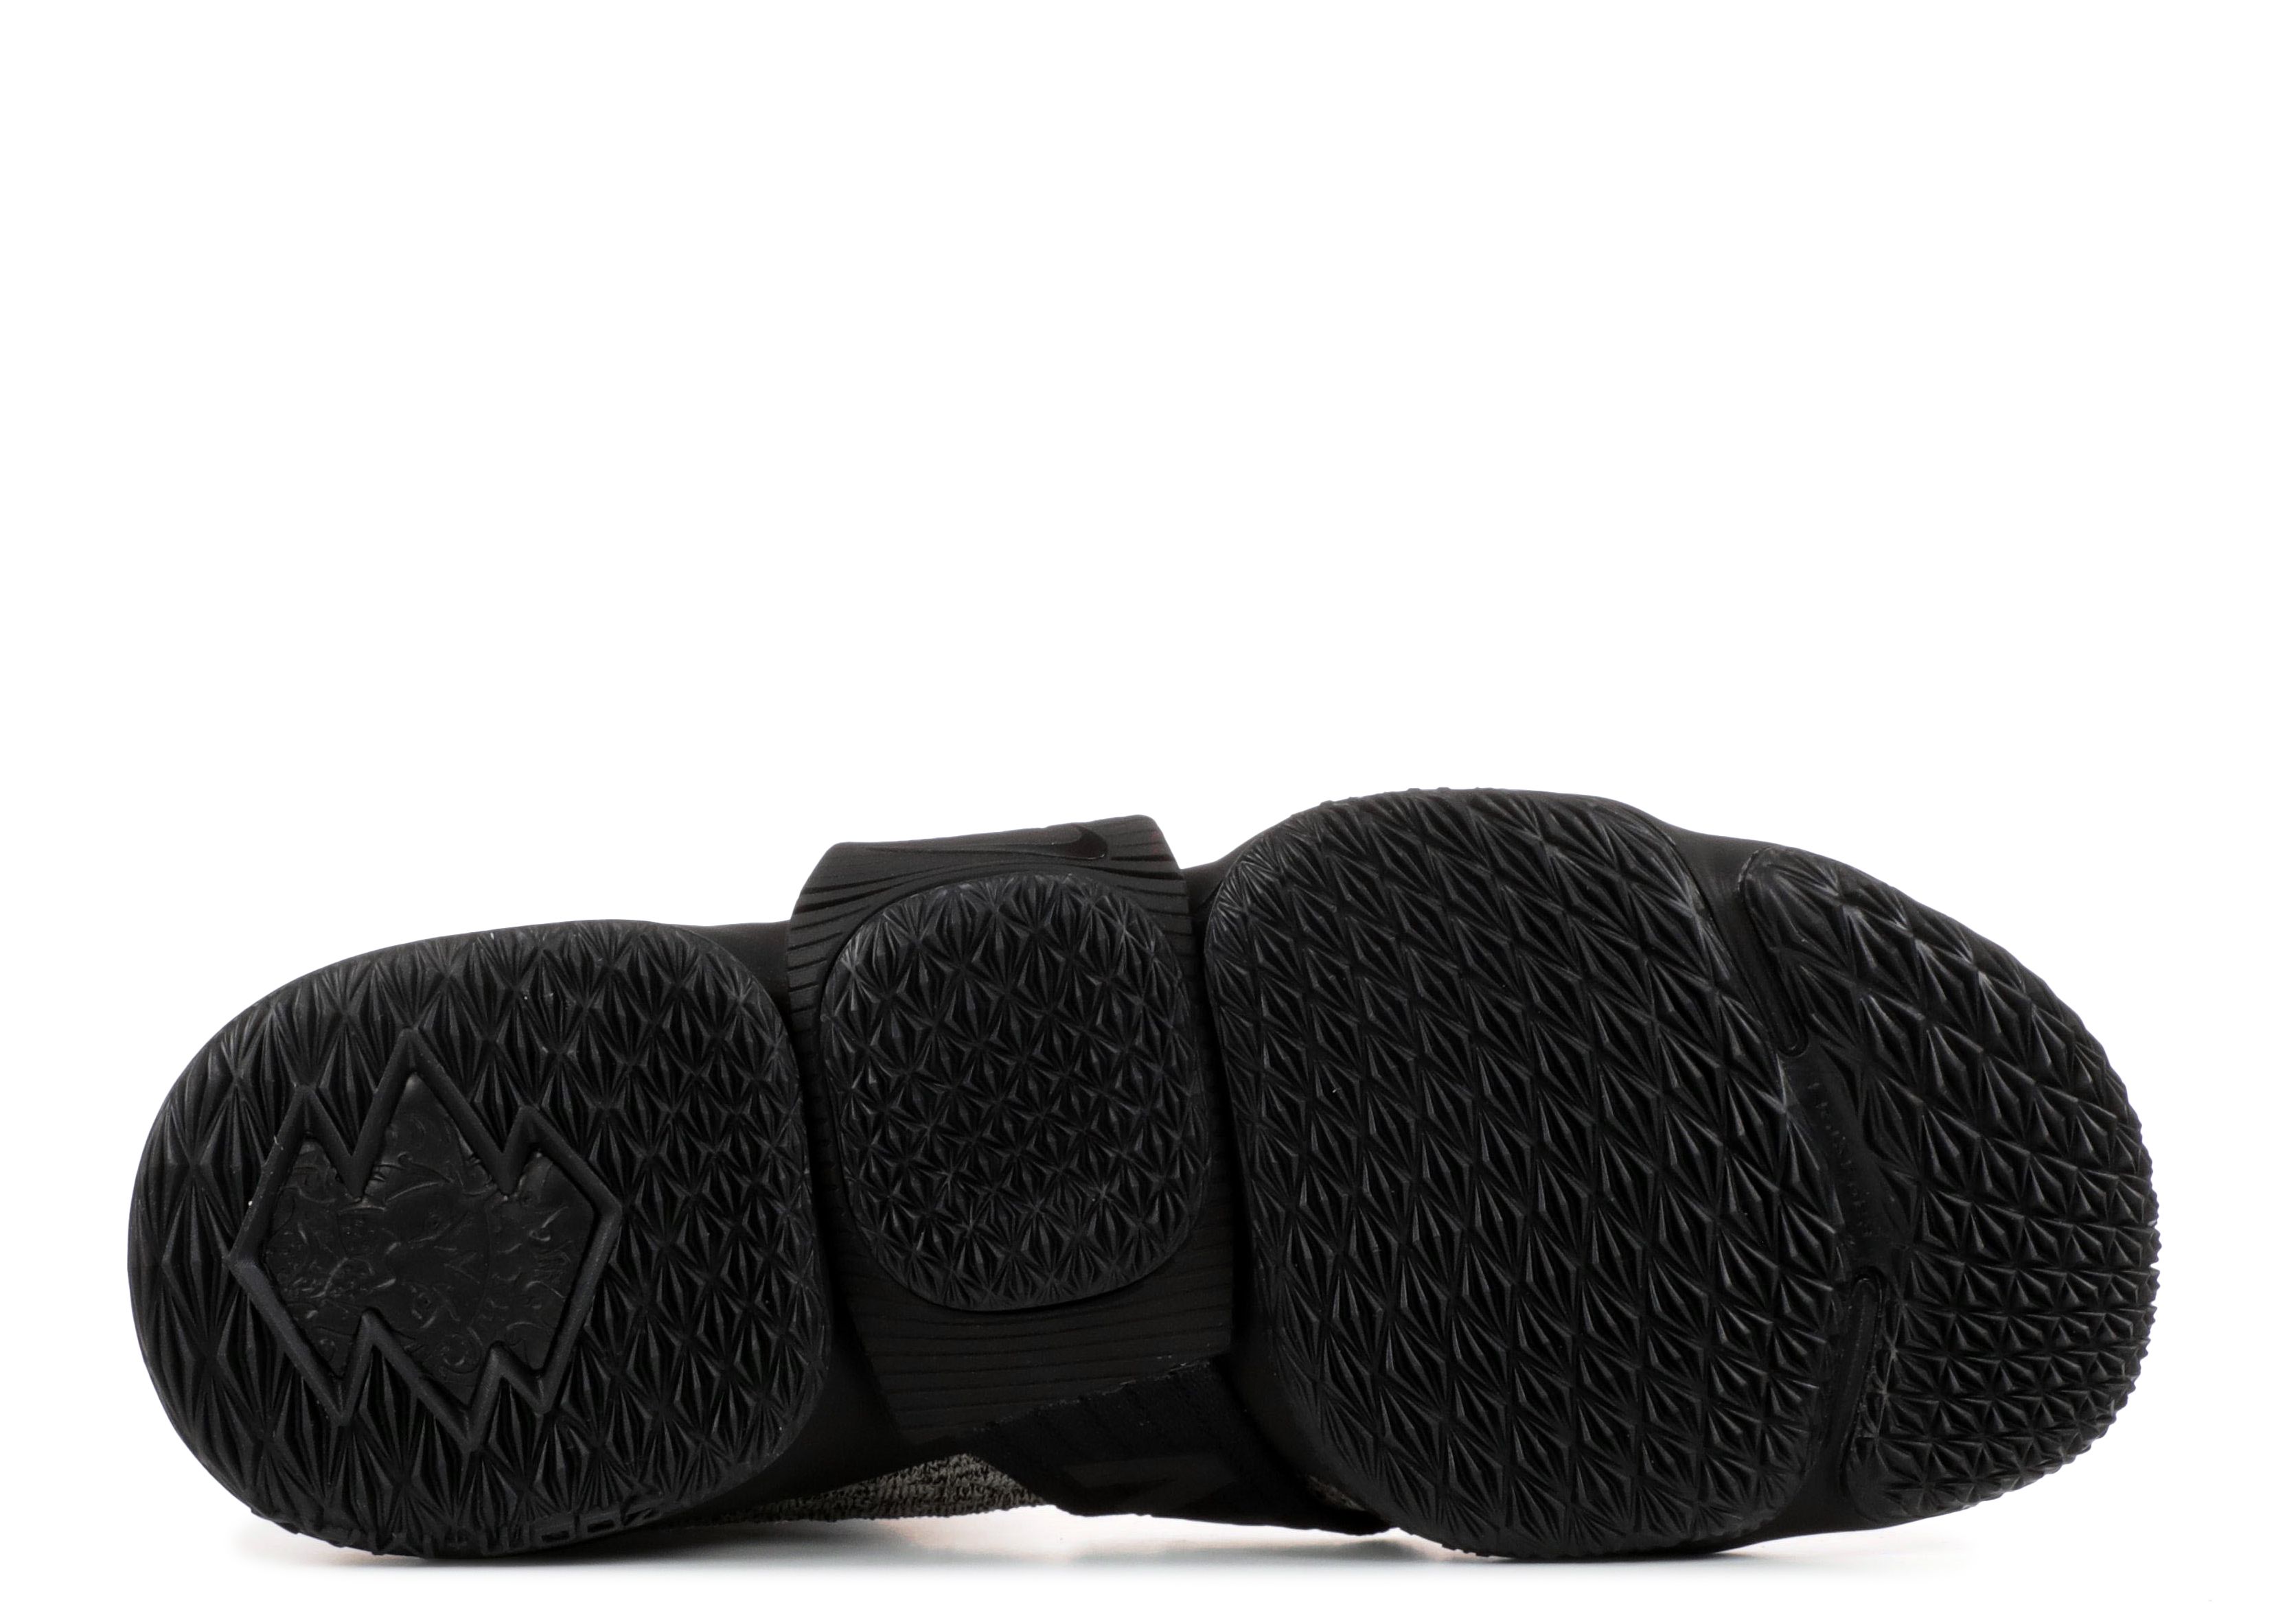 Kith X LeBron Lifestyle 15 'Concrete' - Nike - AO1068 100 - black 